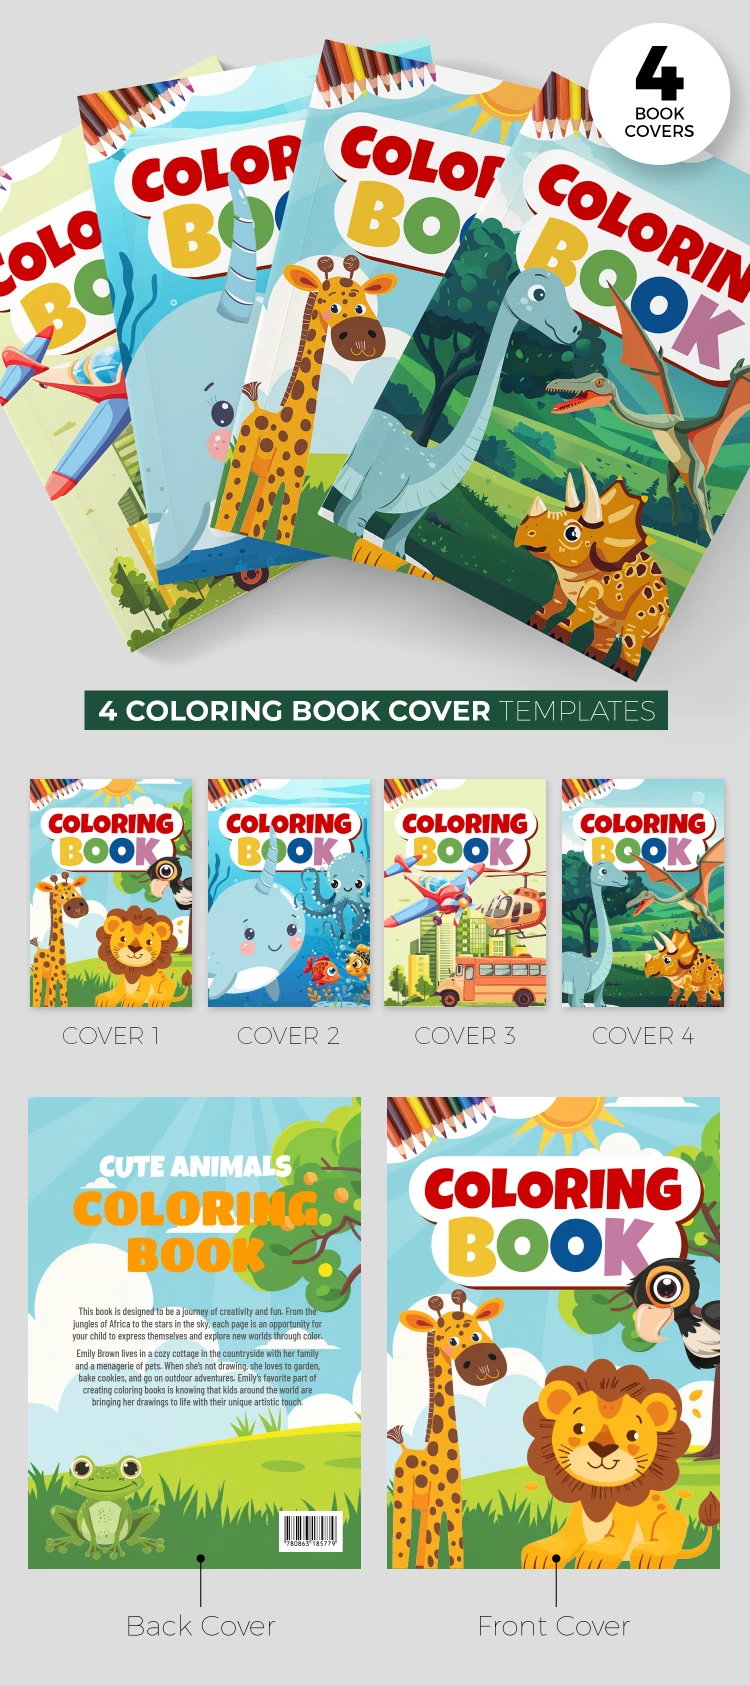 Couverture de livre de coloriage - free Google Docs Template - 10068824